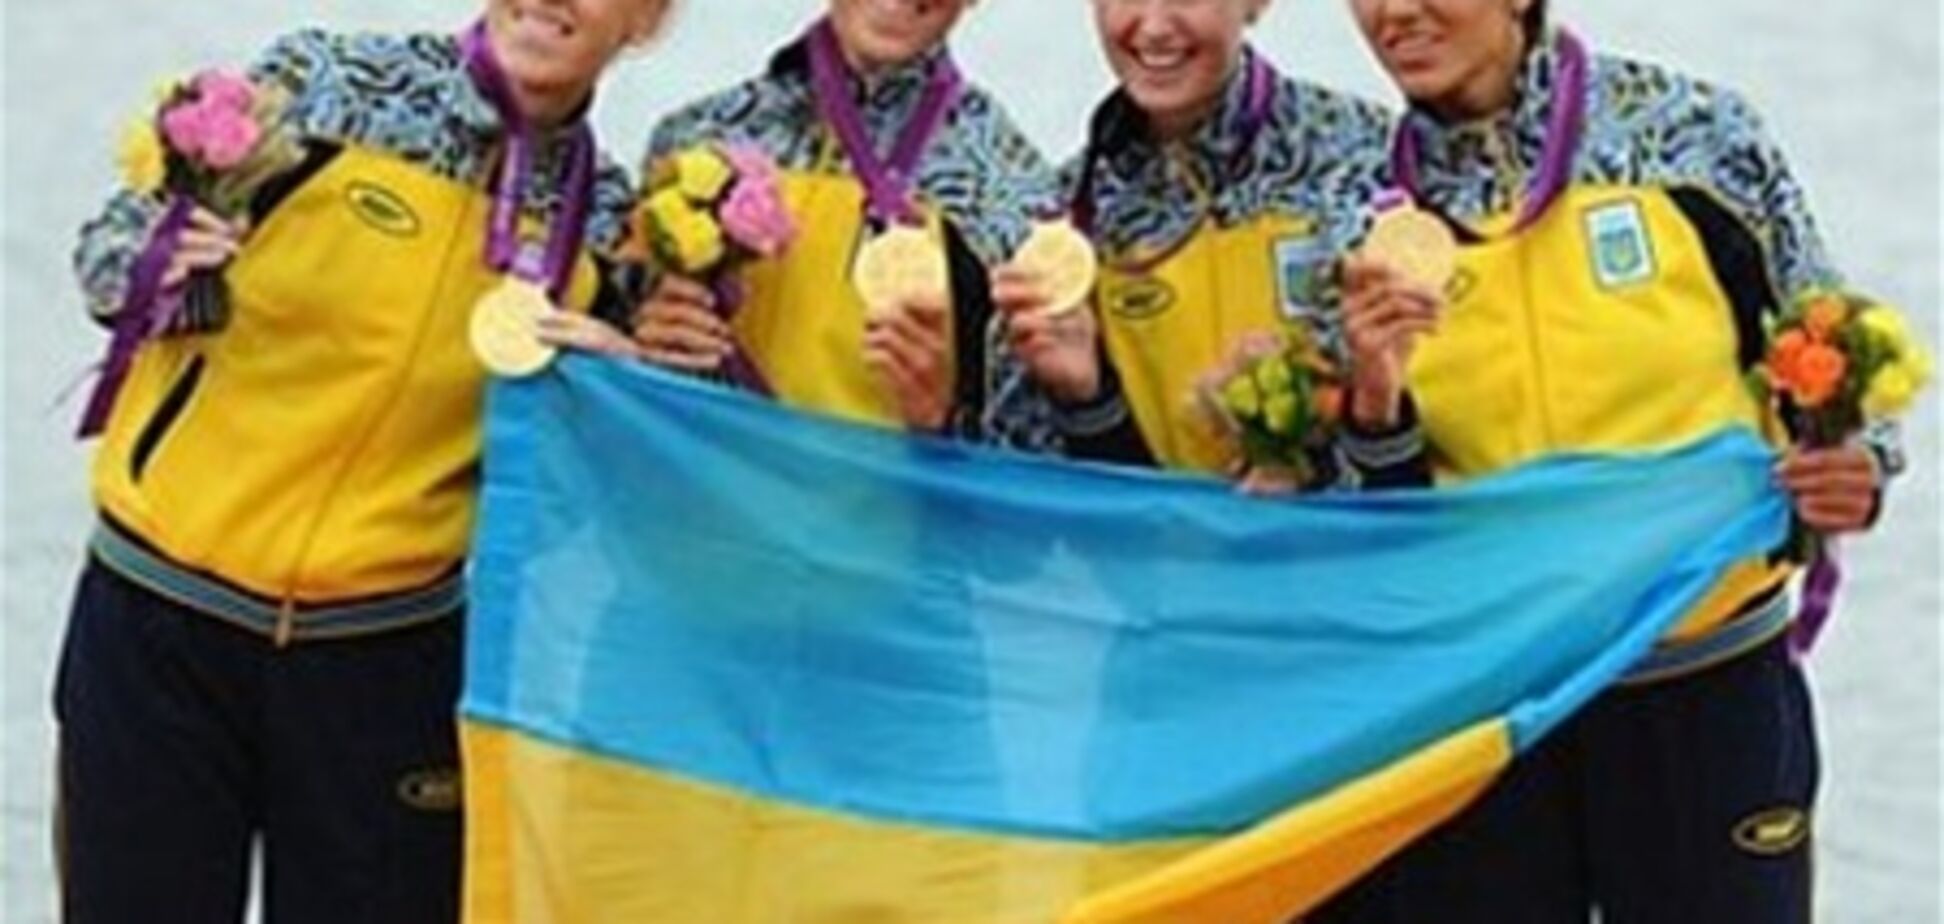 Украина выплатит призерам Олимпиады 13 млн гривен